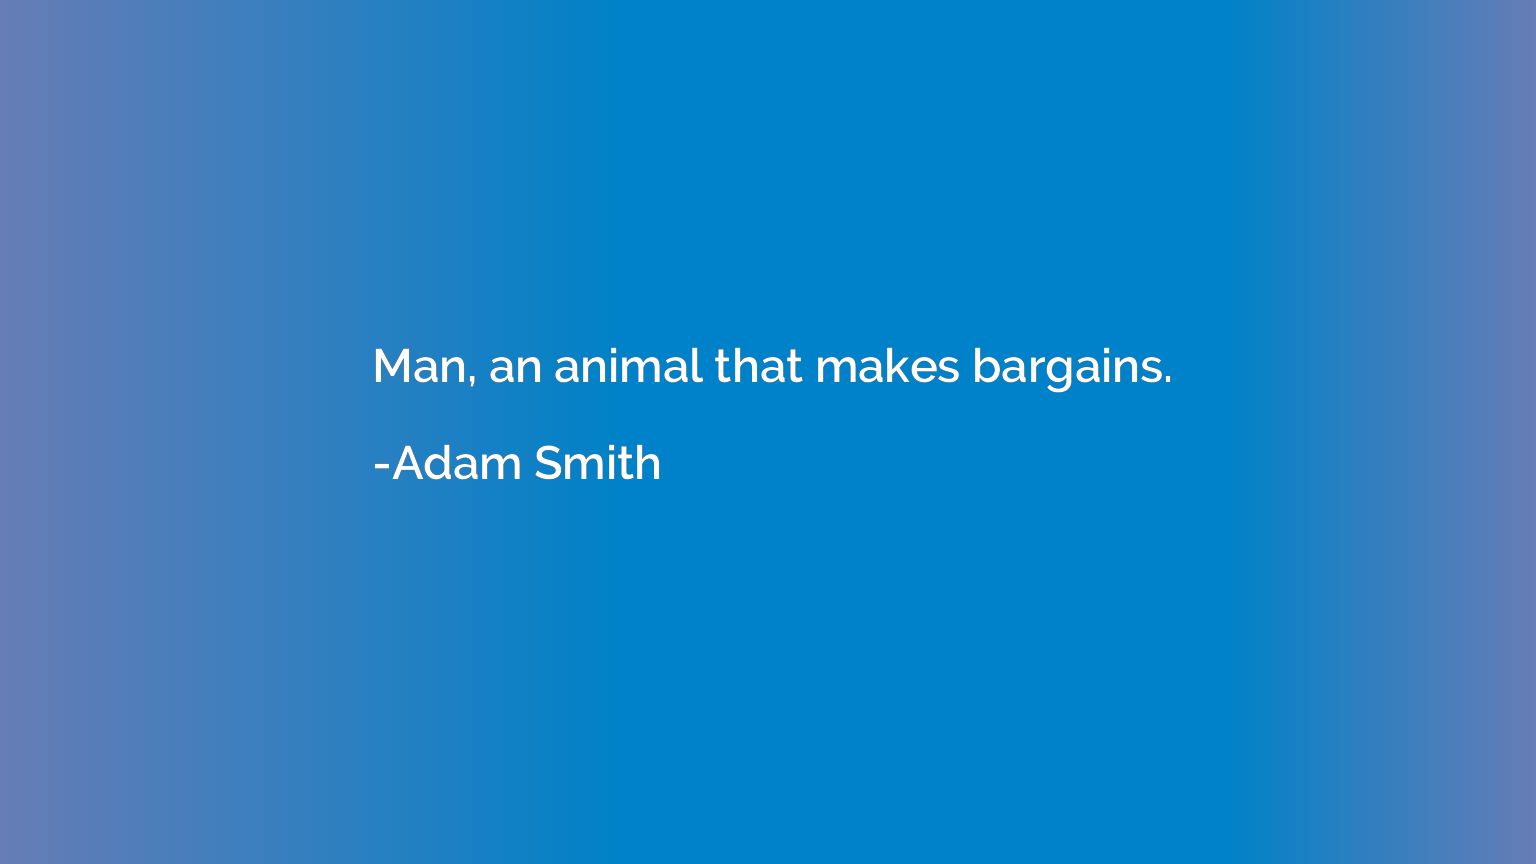 Man, an animal that makes bargains.